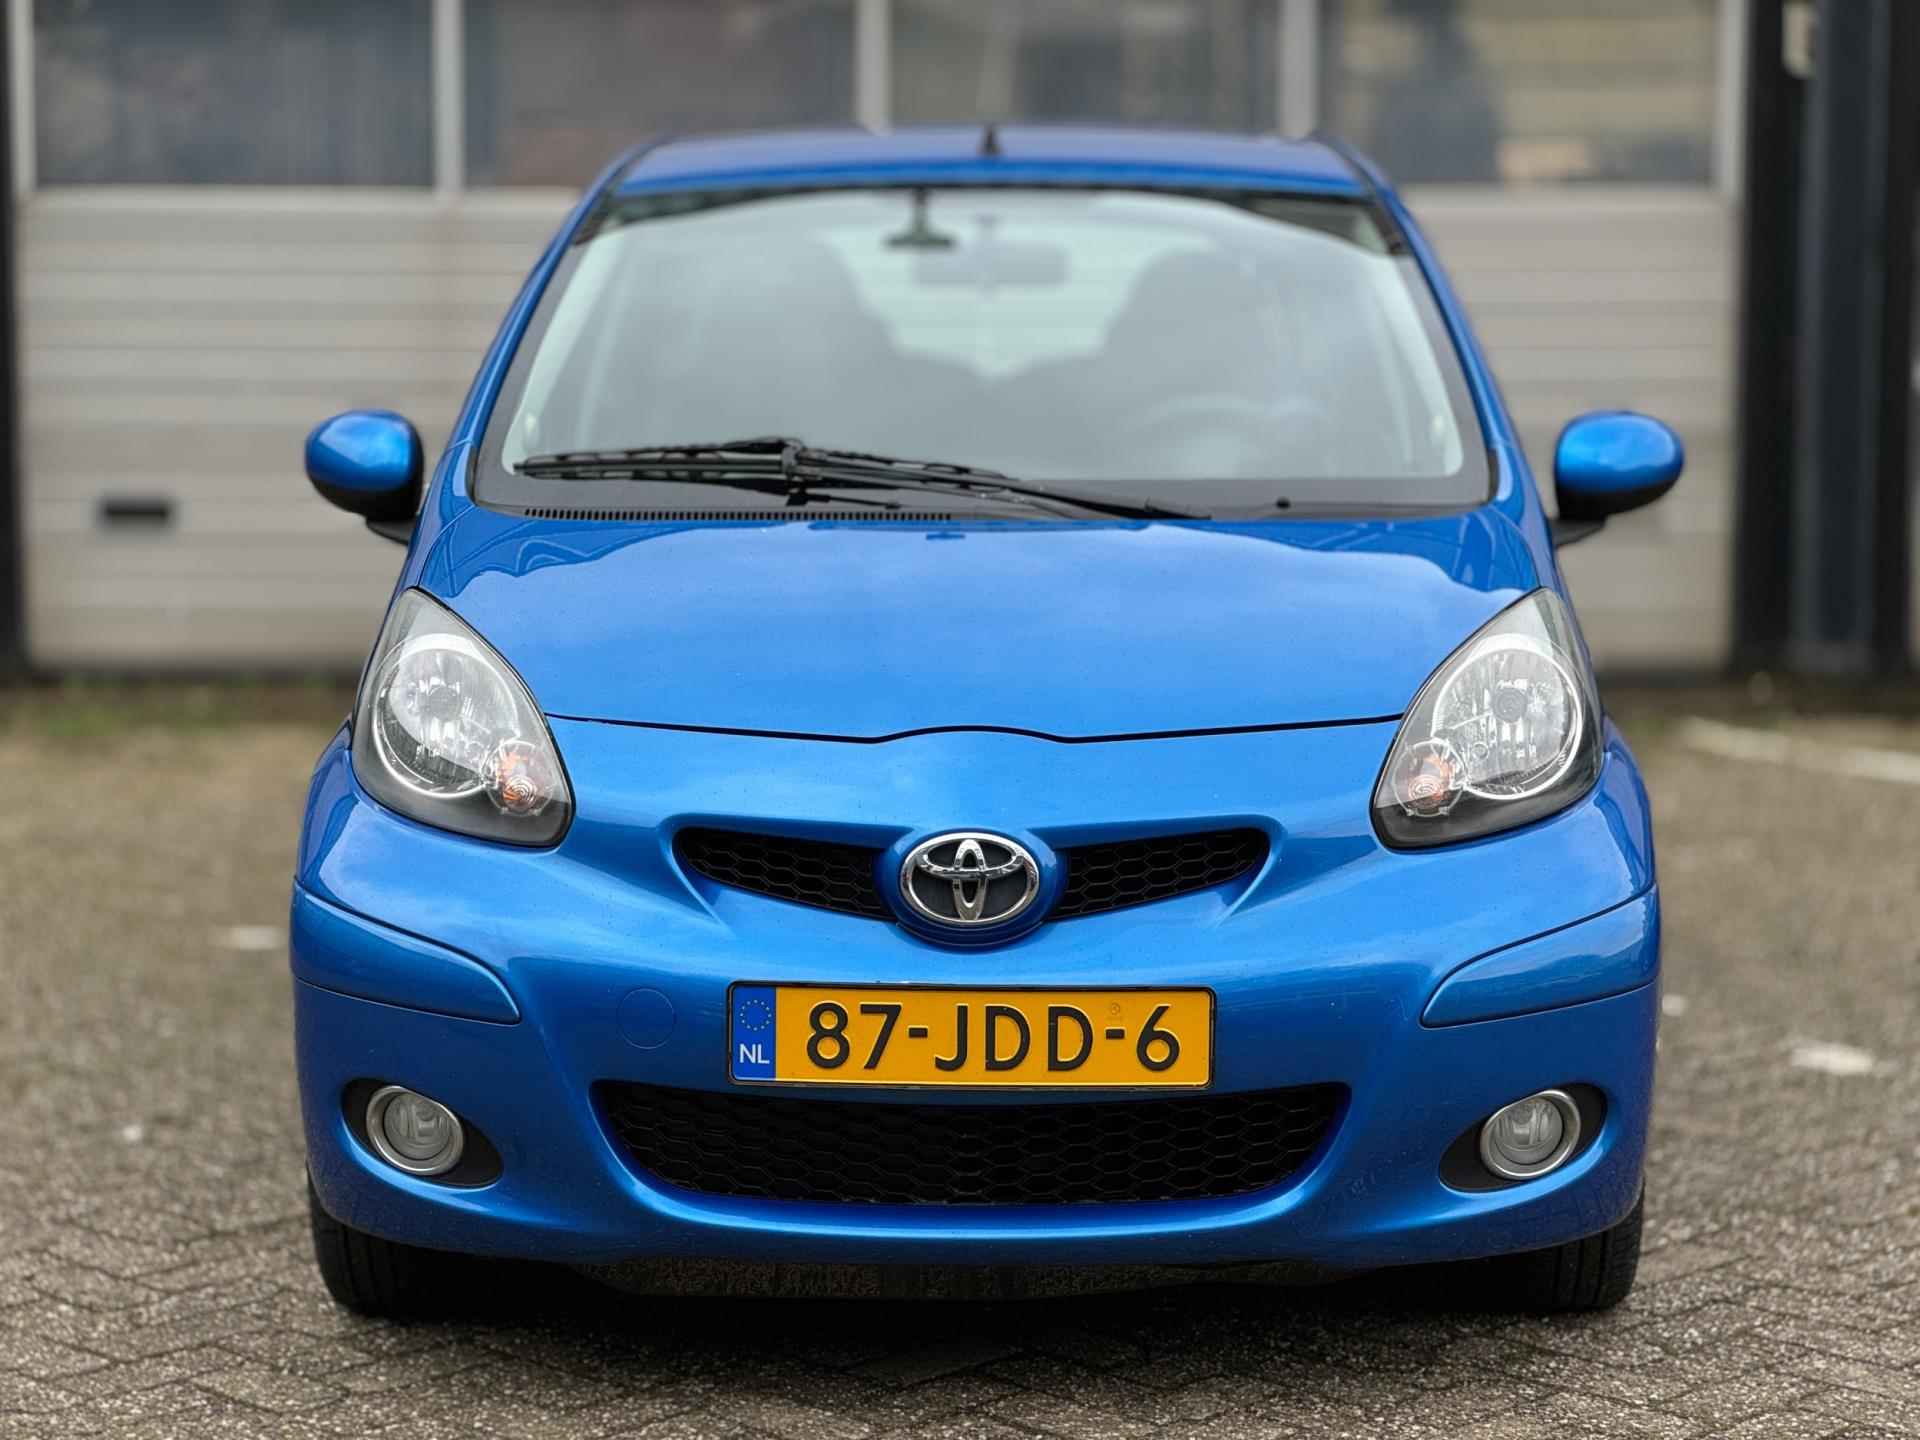 Toyota Aygo 1.0-12V|Airco|Lage KM|5drs|Topstaat|Toerenteller|Special Blue|LM velgen|Boekjes|Zeer nette auto± - 3/34